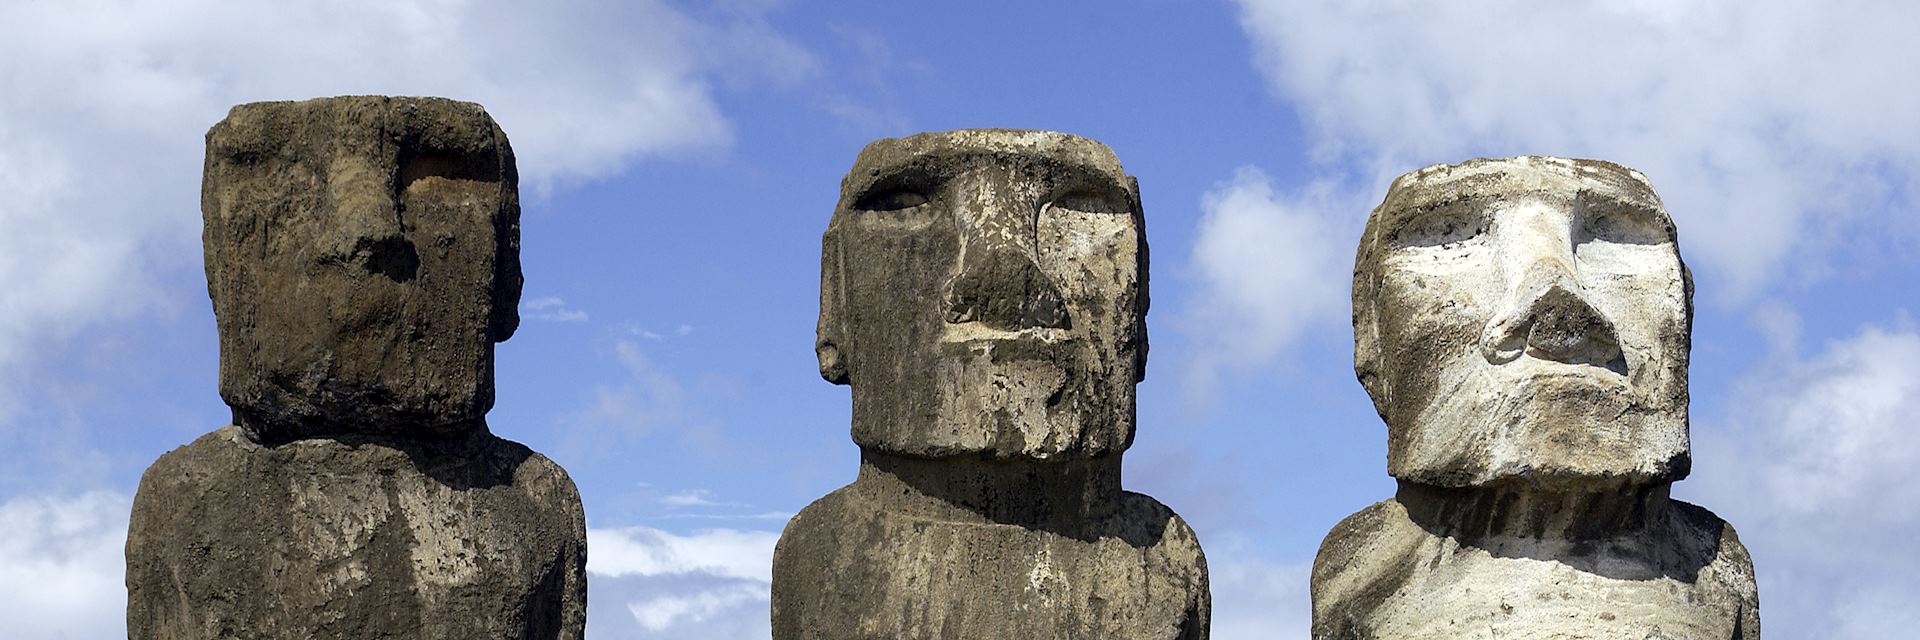 Moai, Easter island